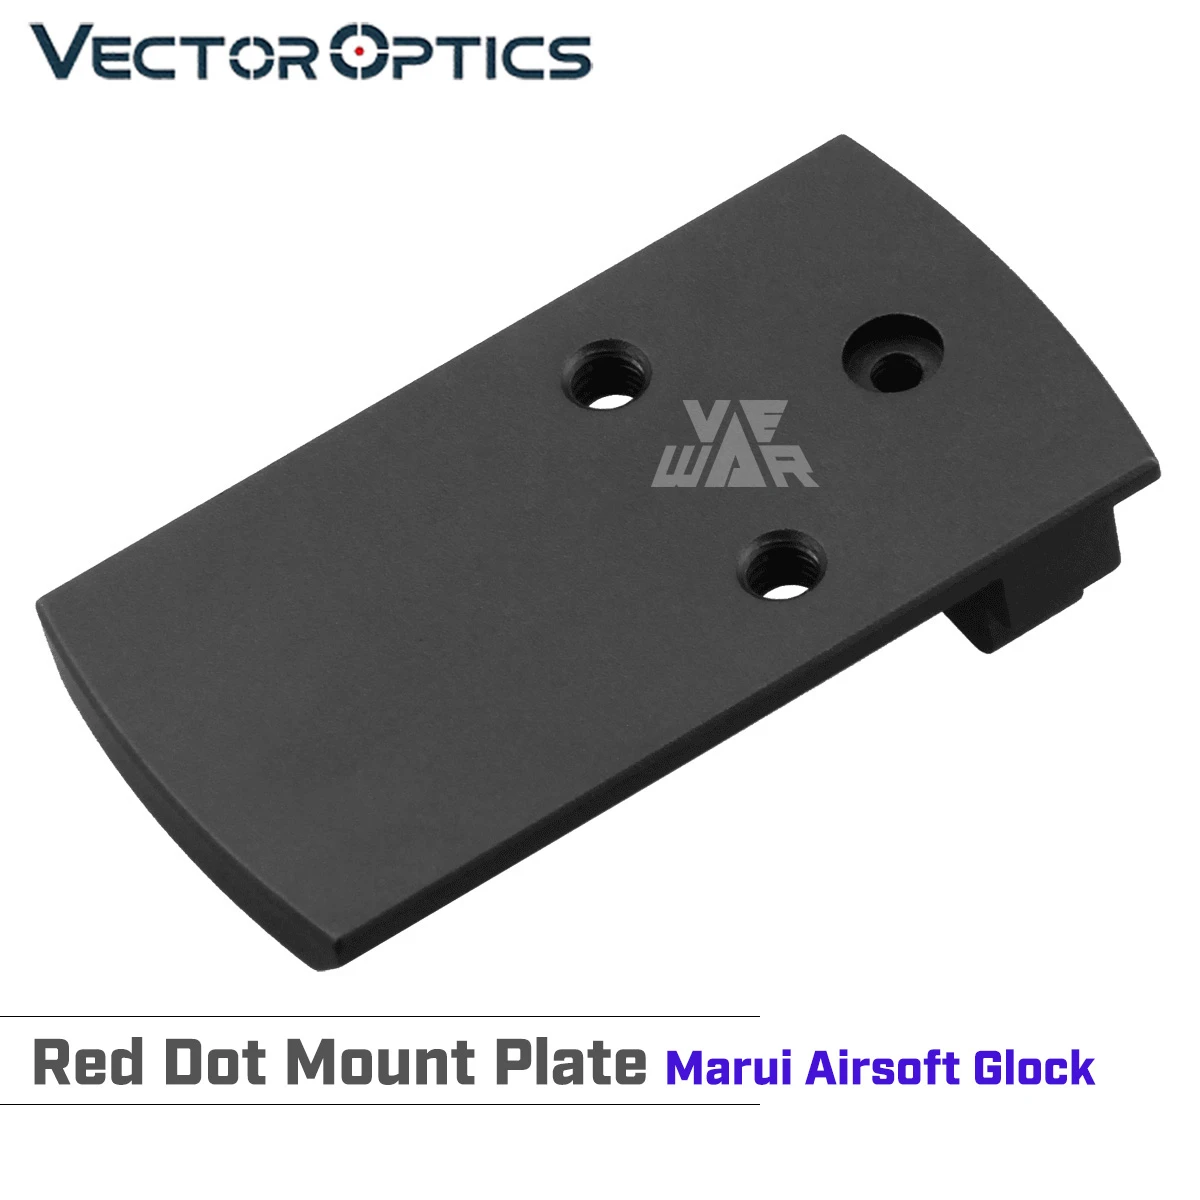 ناقلات البصريات الأحمر دوت جبل لوحة البصر قاعدة مصممة ل Marui Airsoft غلوك يناسب الهيجان البصر